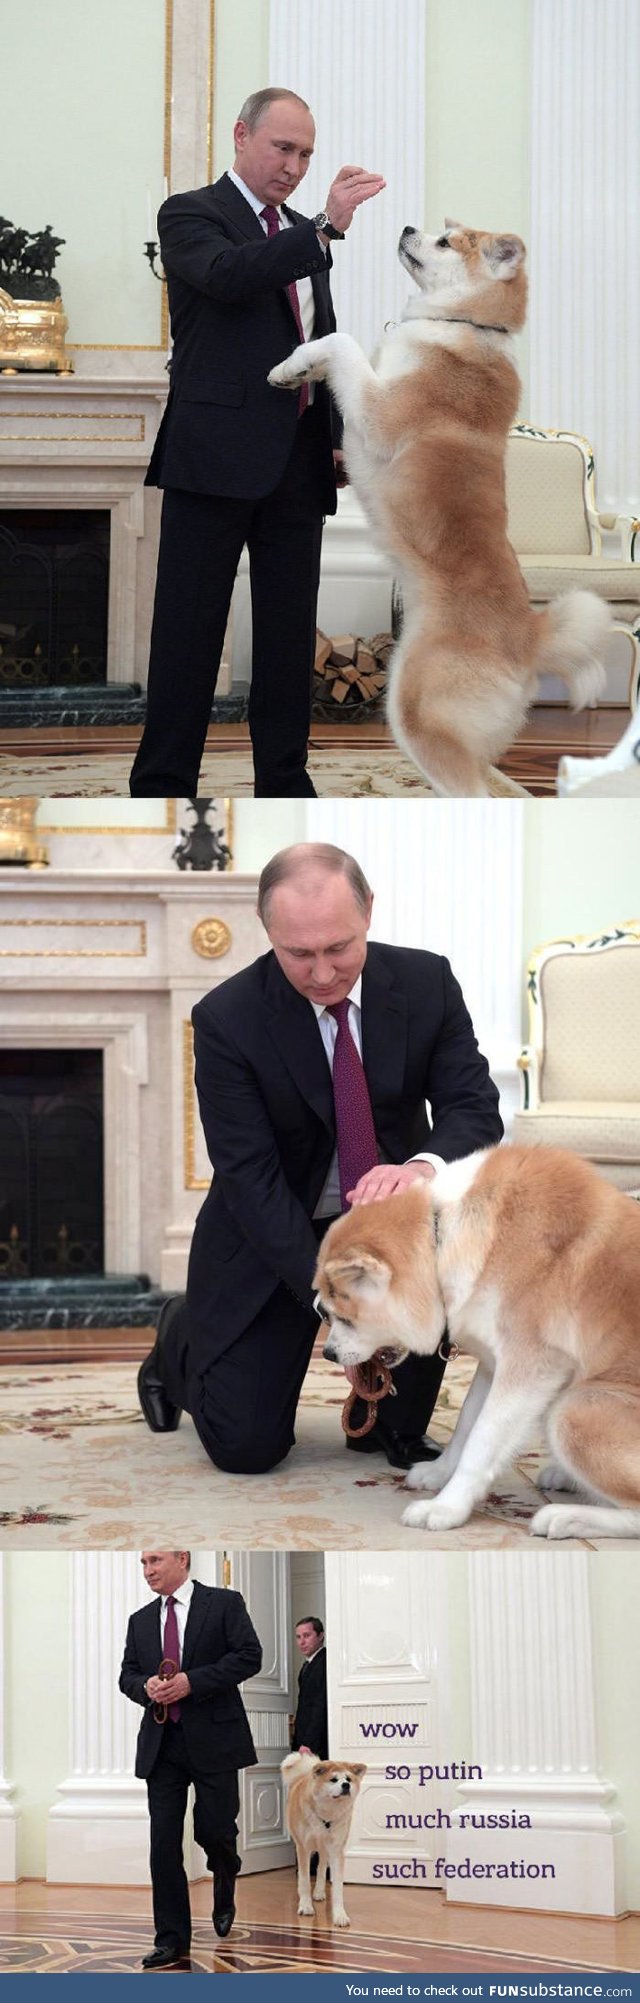 Putin's doge